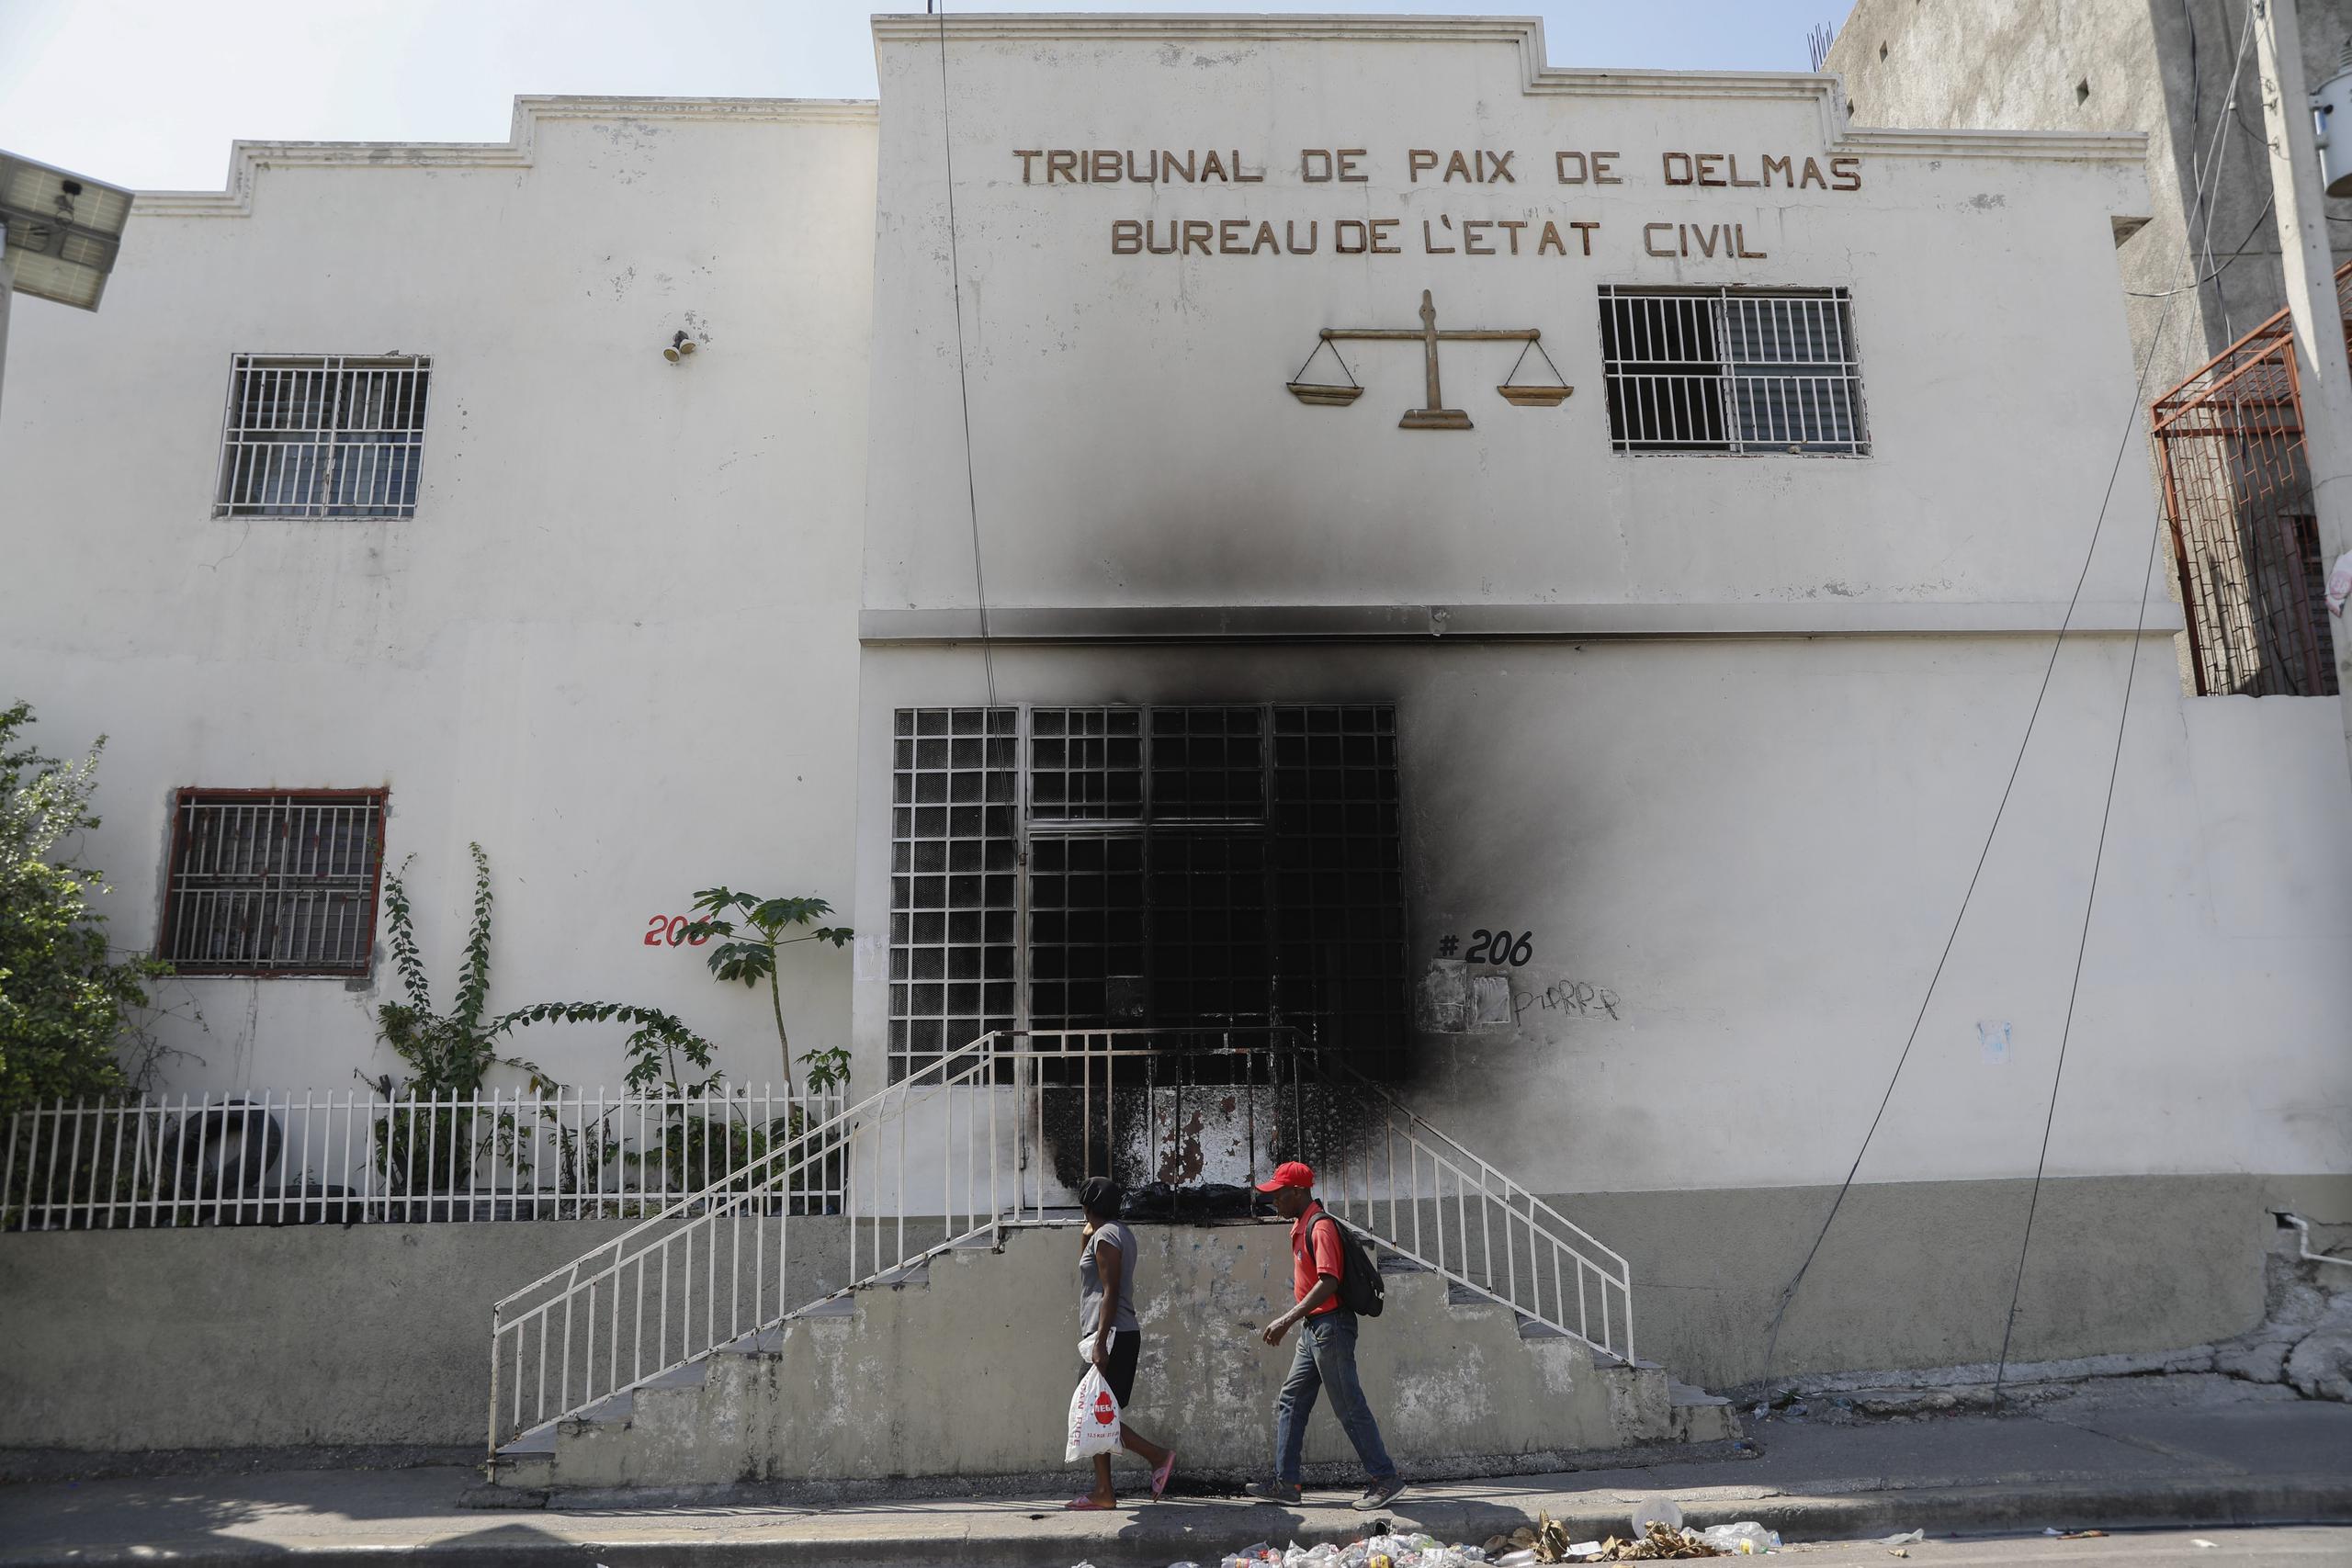 Dos peatones pasan junto a un edificio judicial que fue incendiado por pandillas en el barrio Delmas 28 de Puerto Príncipe, Haití, el 6 de marzo de 2024. (Foto AP/Odelyn Joseph)